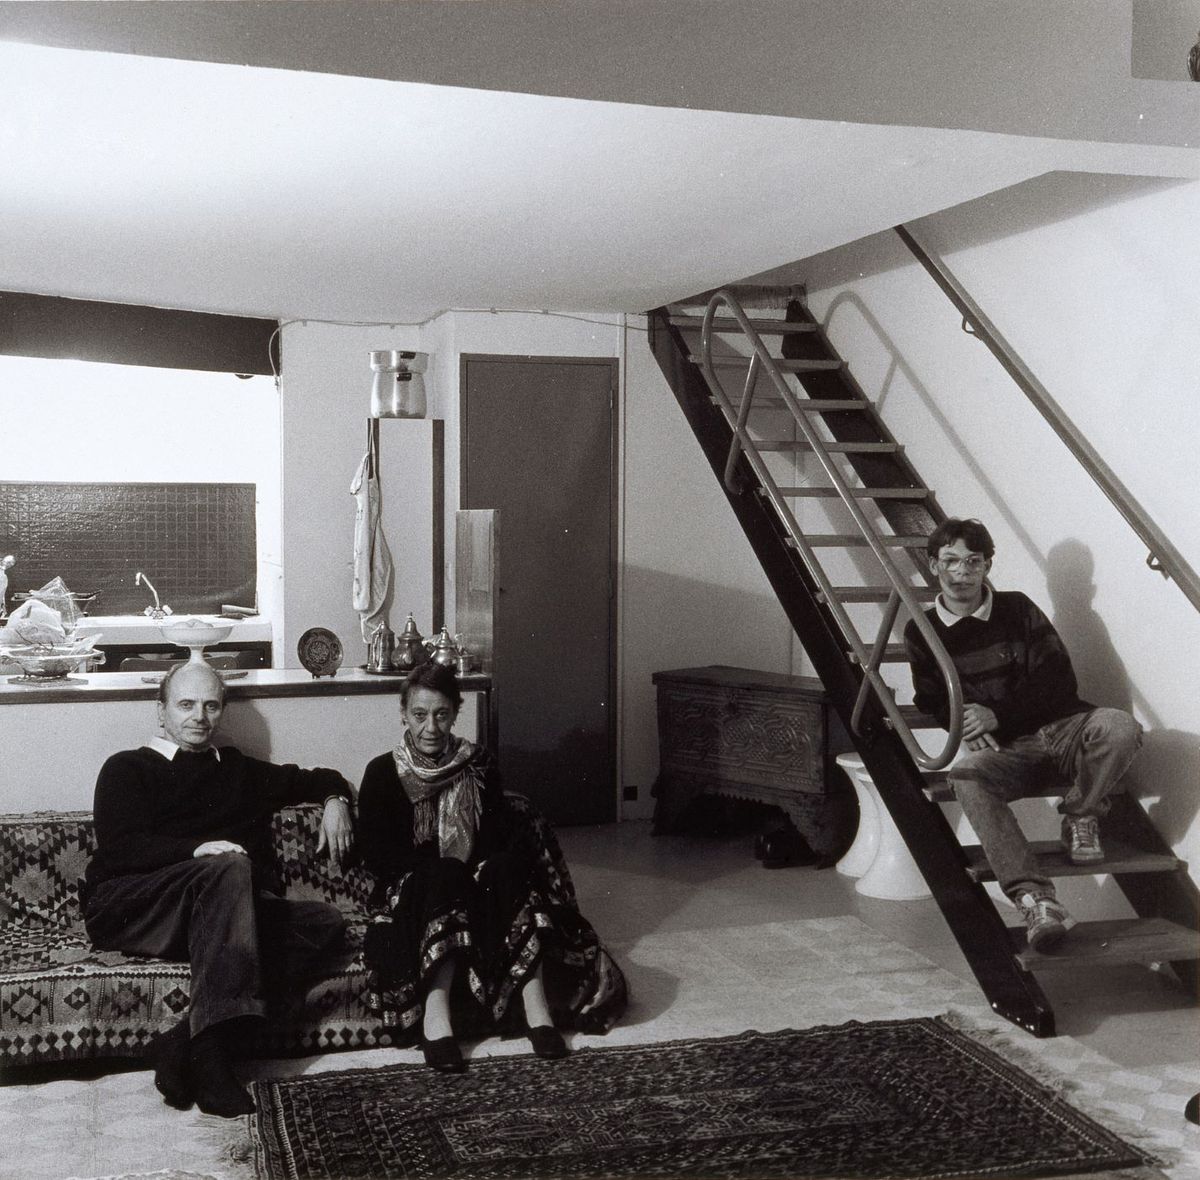 Jean-Louis Schoellkopf, Firminy, l’unité d’habitation Le Corbusier, octobre 1991  - novembre 1991, tirage chlorobromure, 58,7 x 50,4 cm. Collection MAMC+. © Jean-Louis Schoellkopf